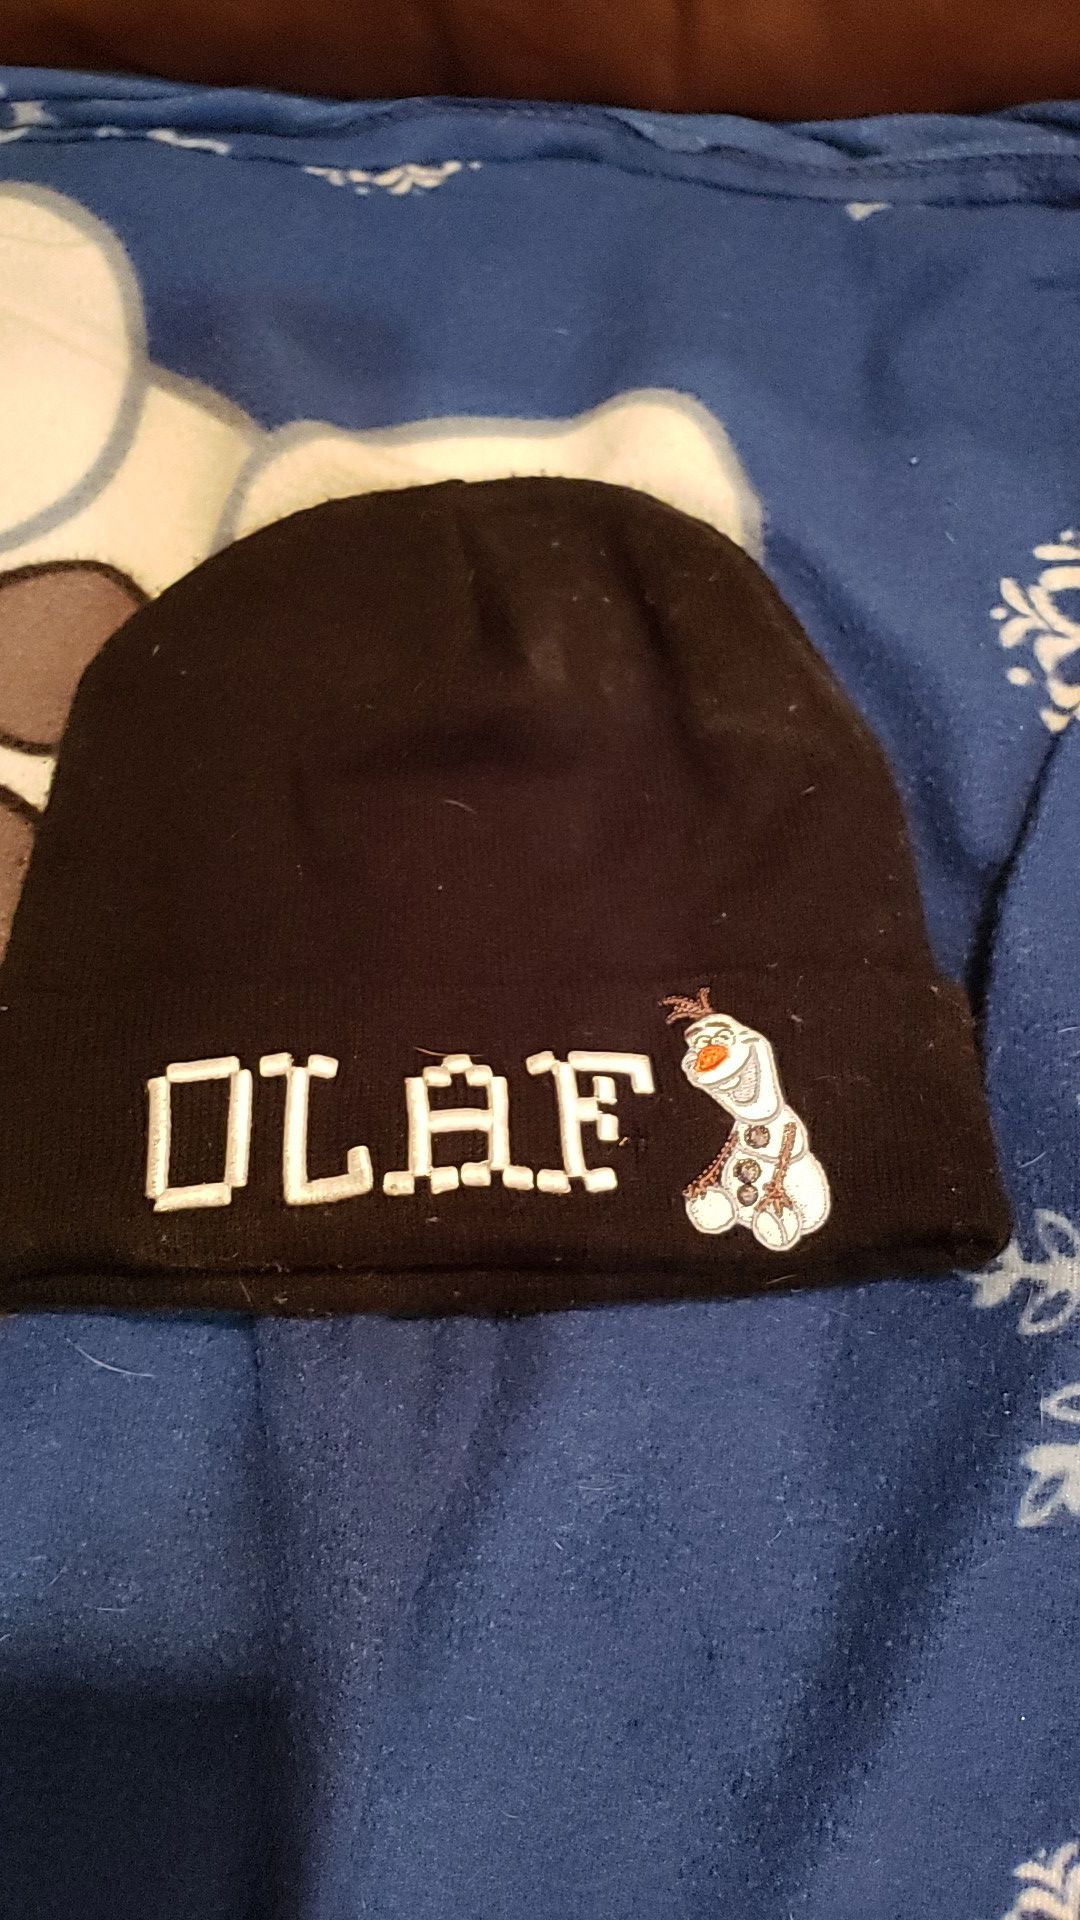 Olaf winter hat